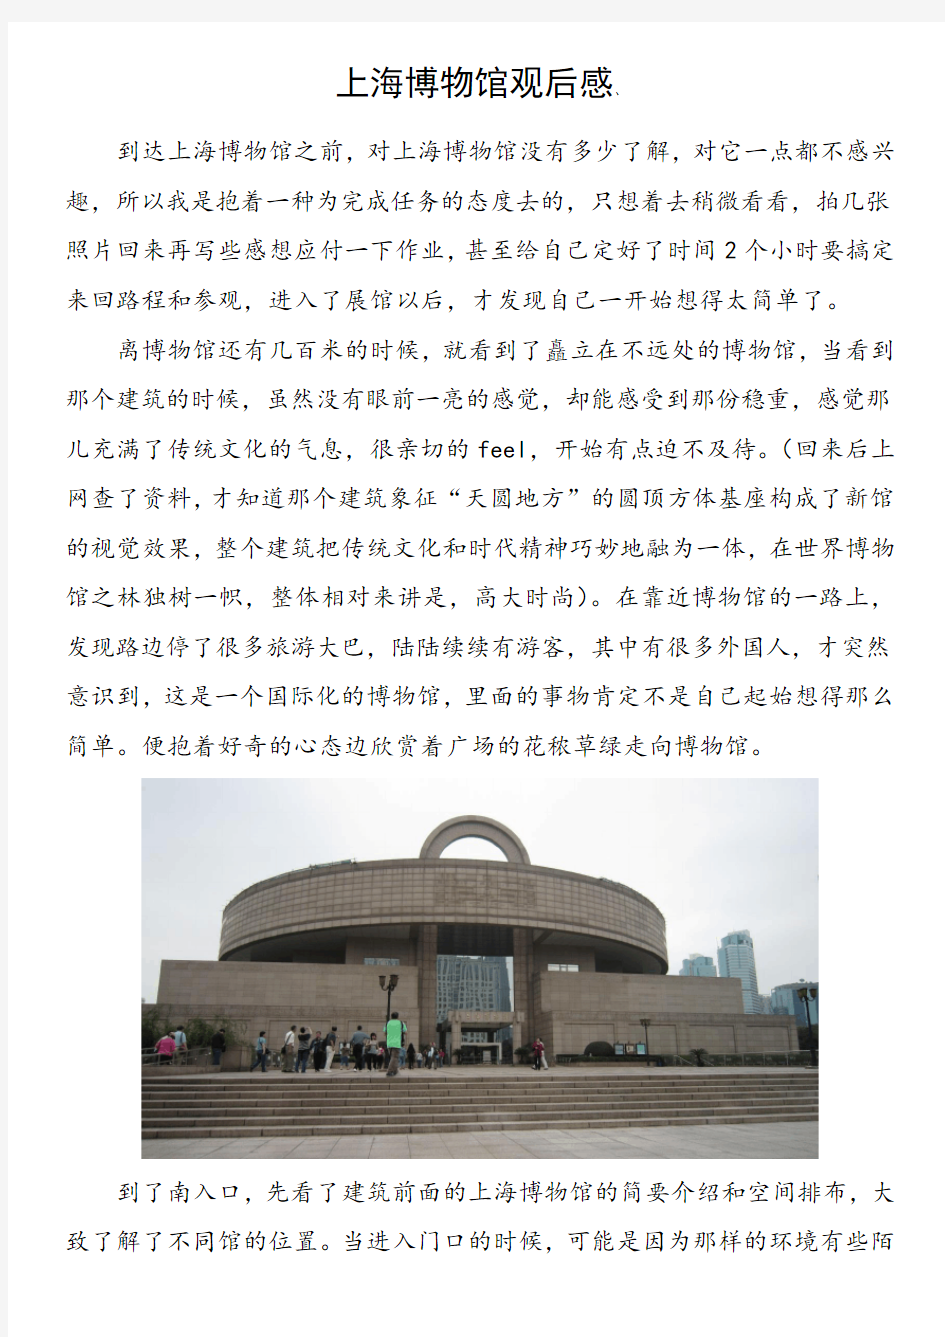 上海博物馆观后感